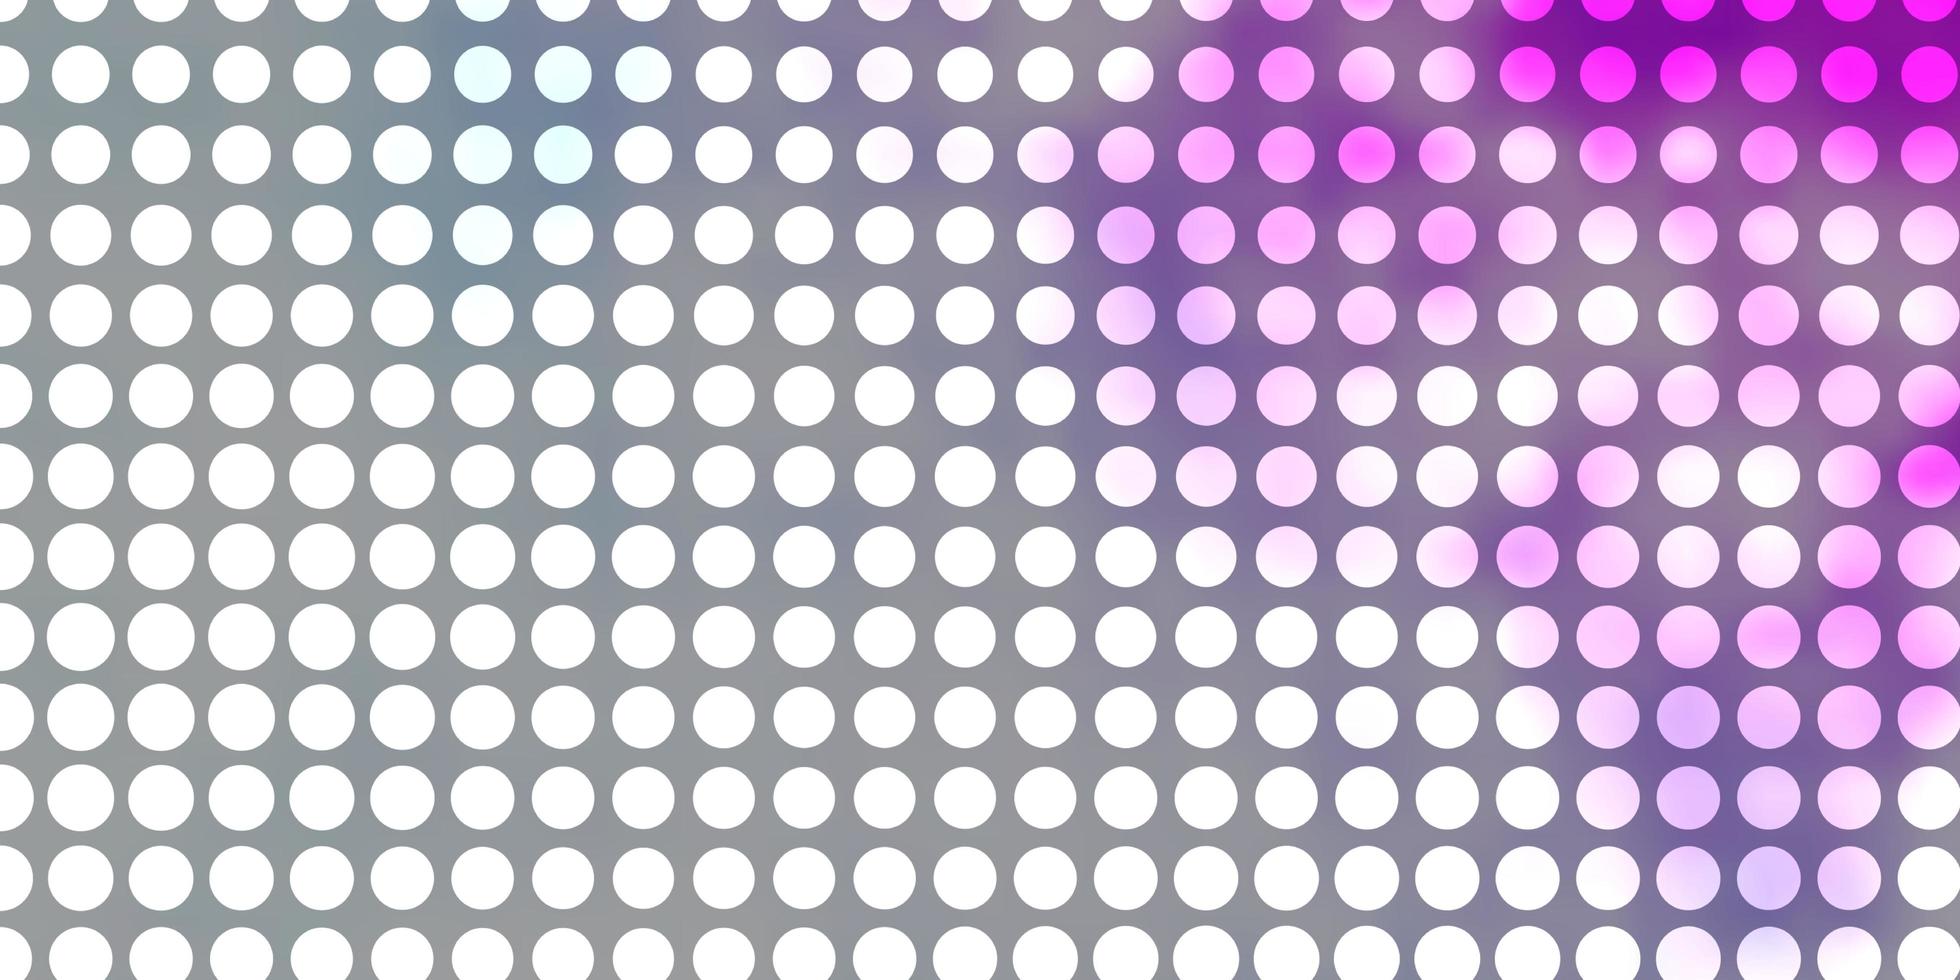 modèle vectoriel violet clair avec des cercles.